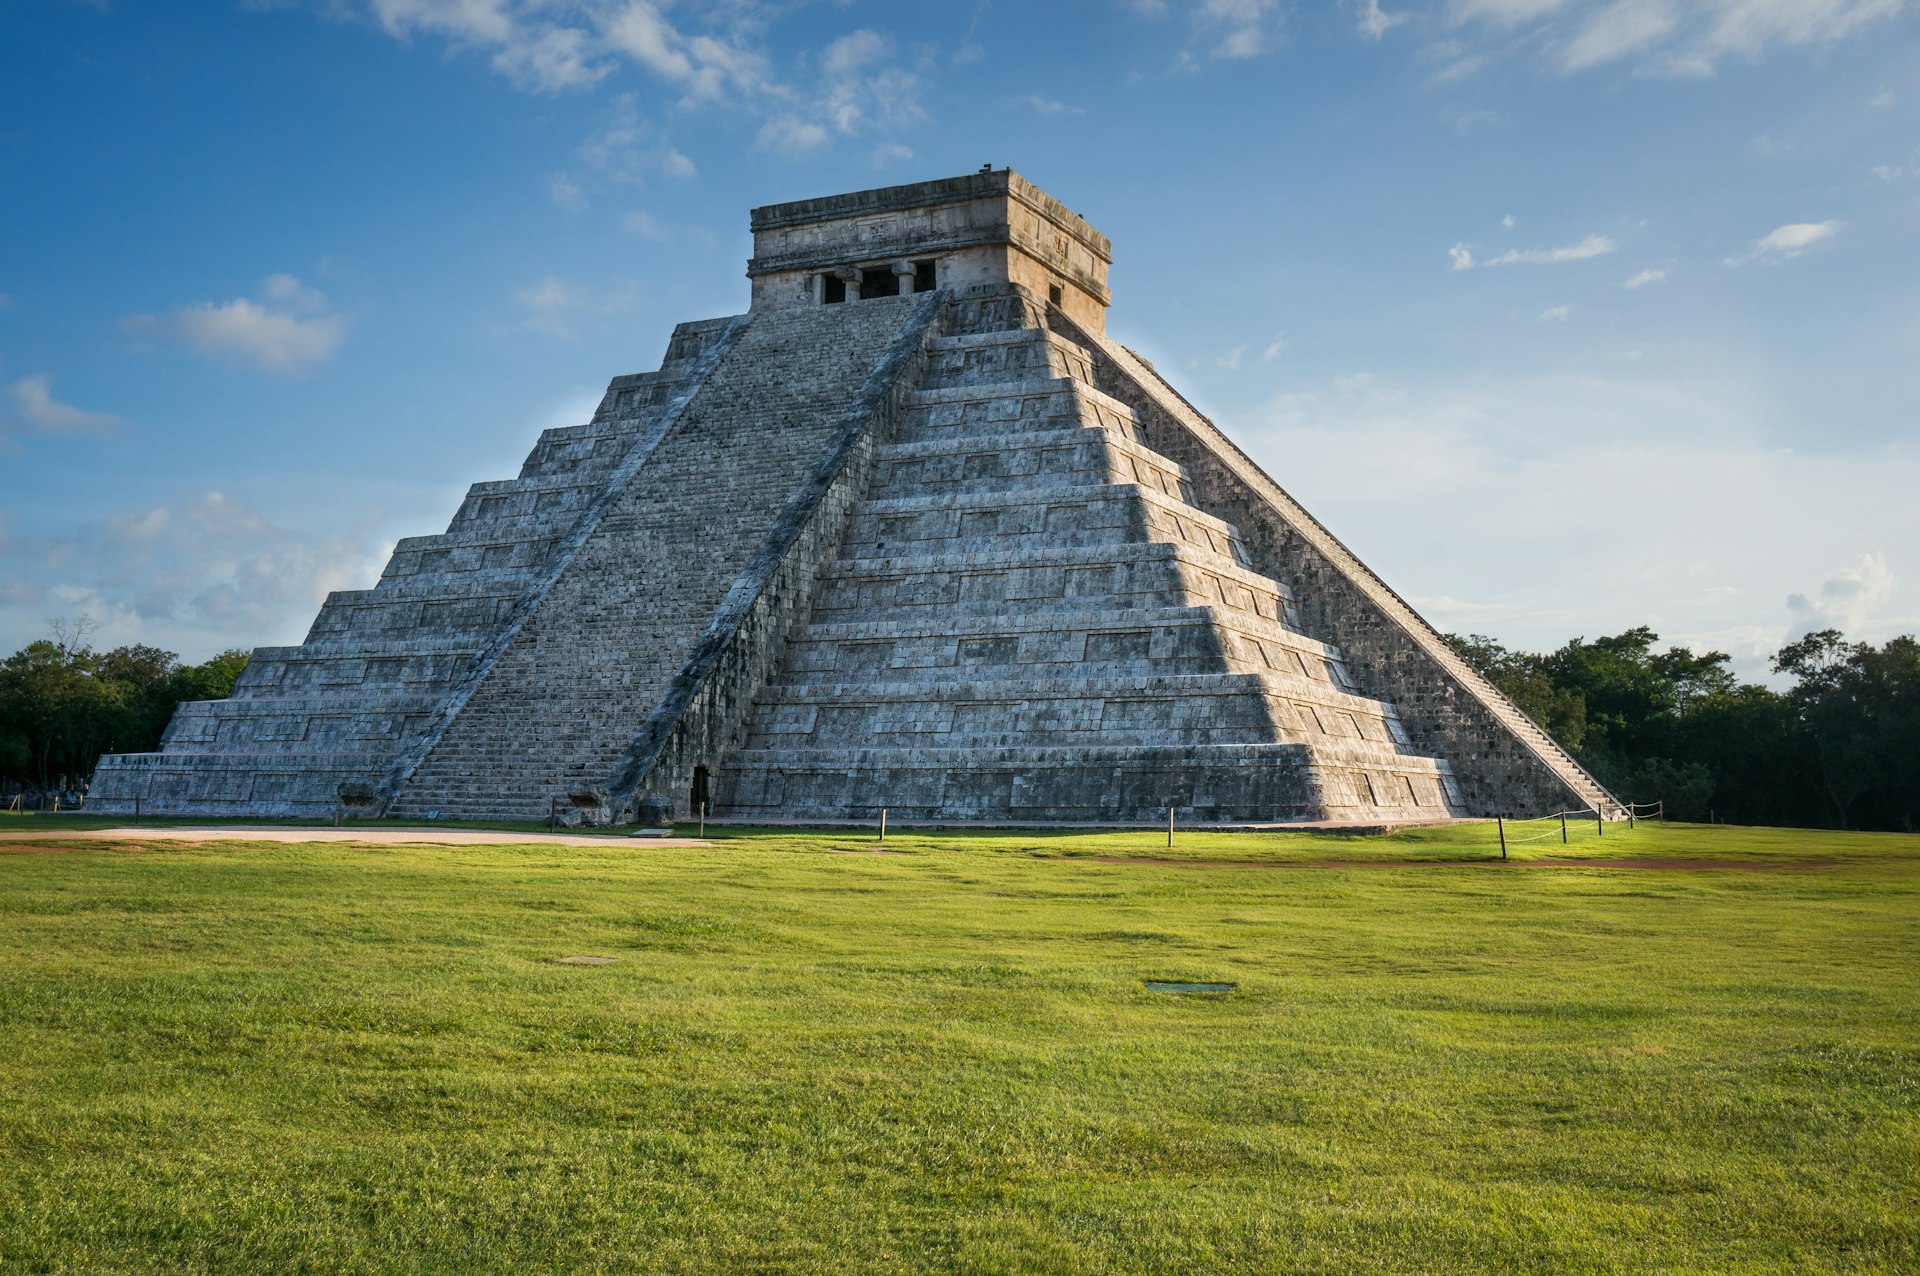 500px Photo ID: 87259433 - Kukulkan Pyramid at Chichen Itza, Yukatan, Mexico